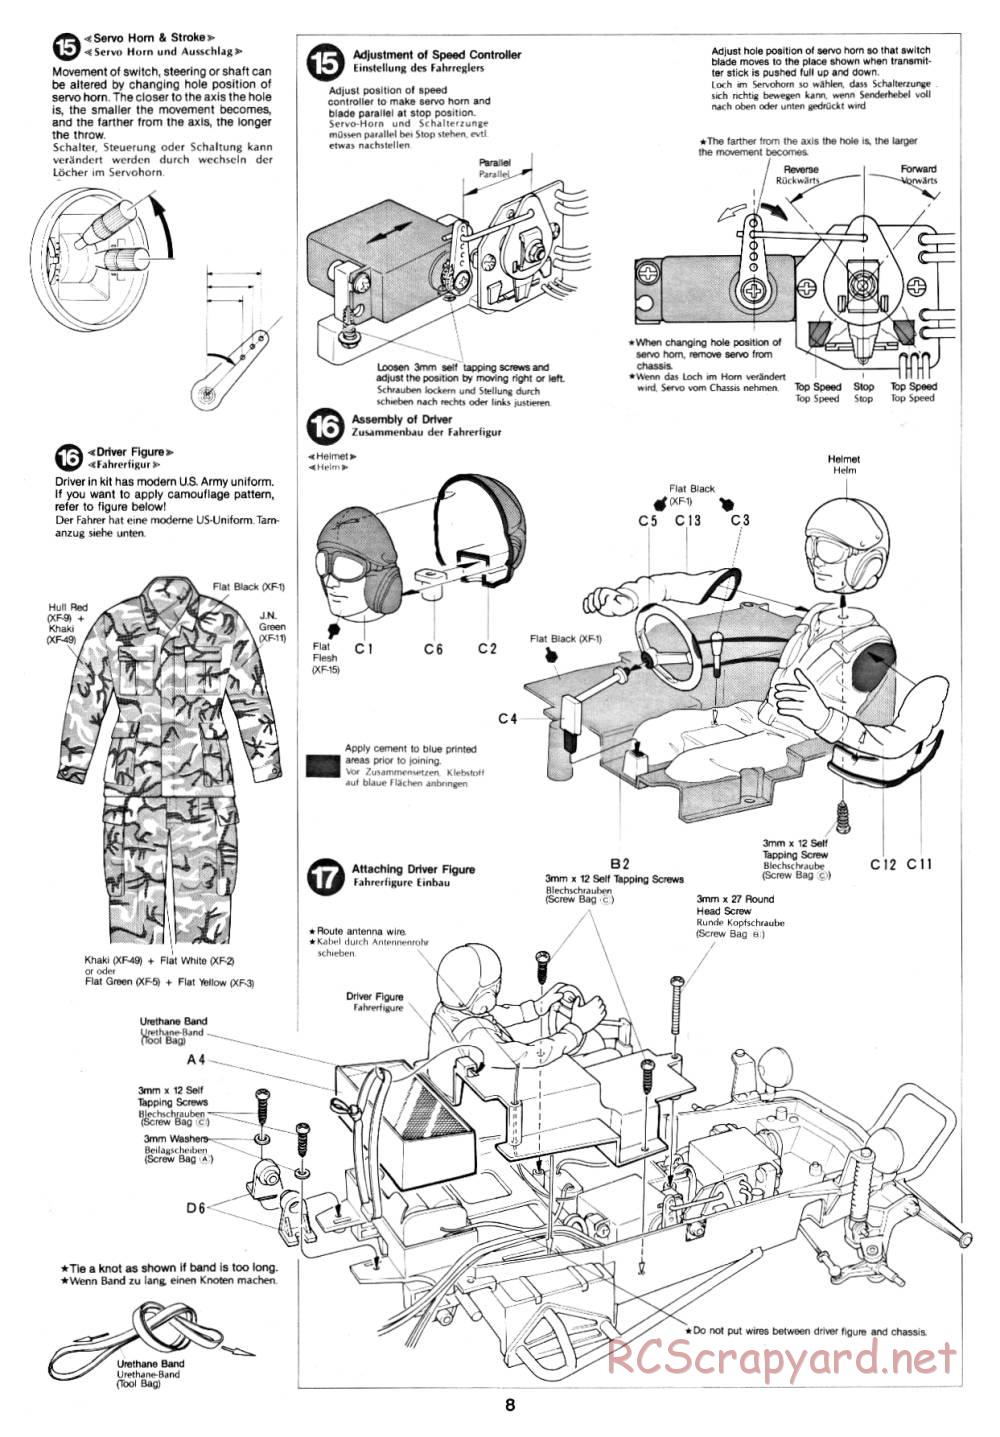 Tamiya - Fast Attack Vehicle - 58046 - Manual - Page 8